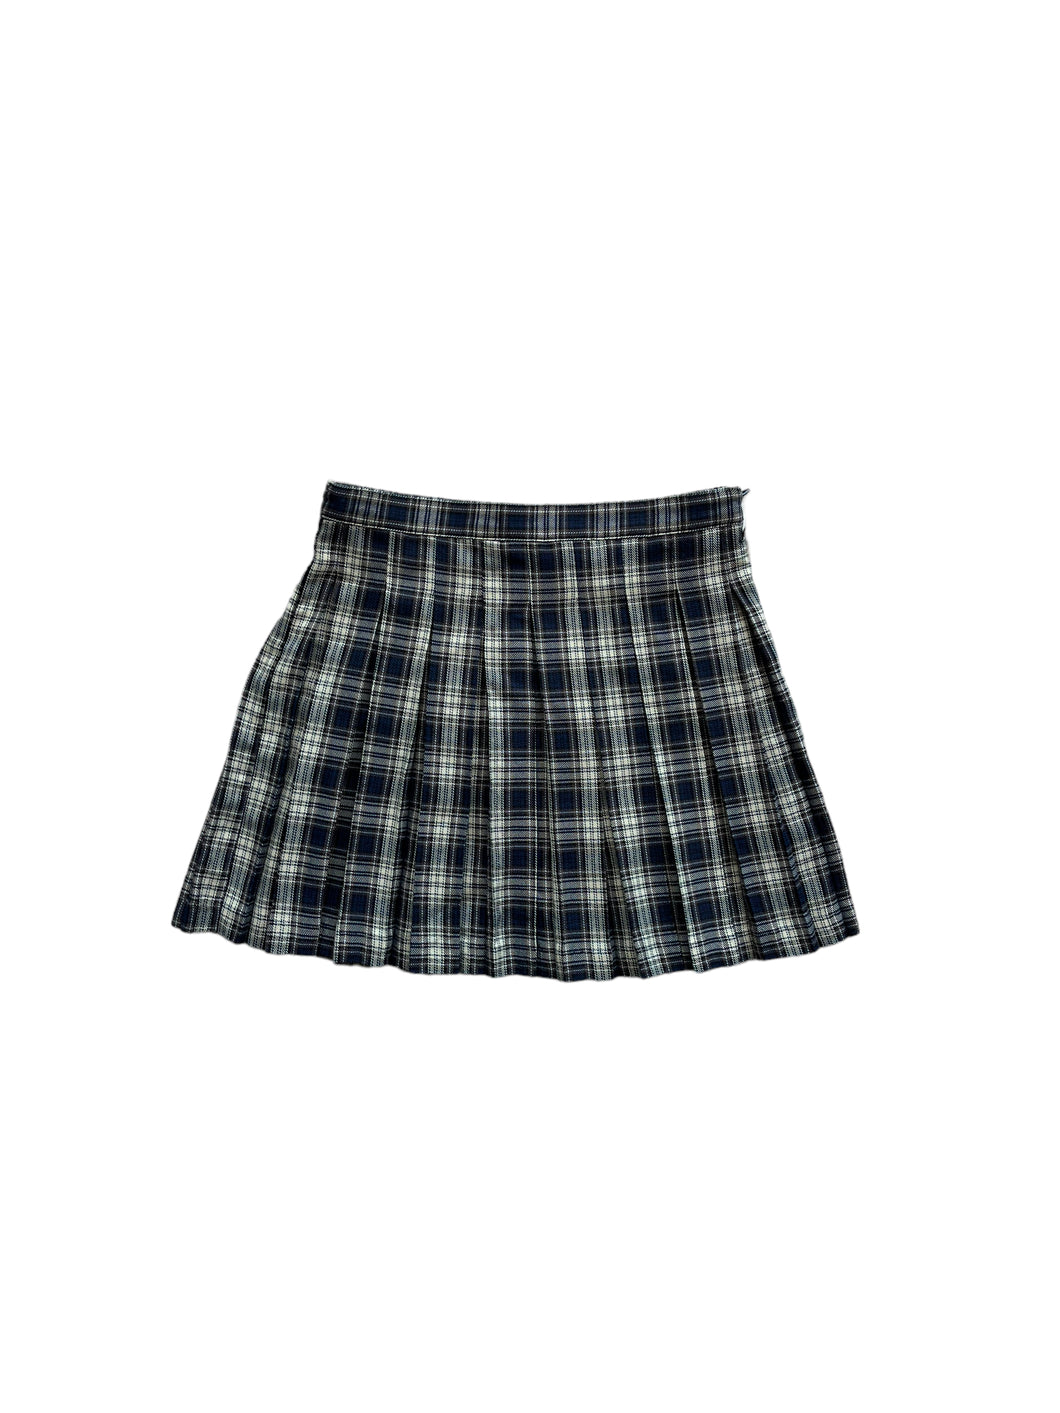 Schoolgirl Japanese plaited skirt